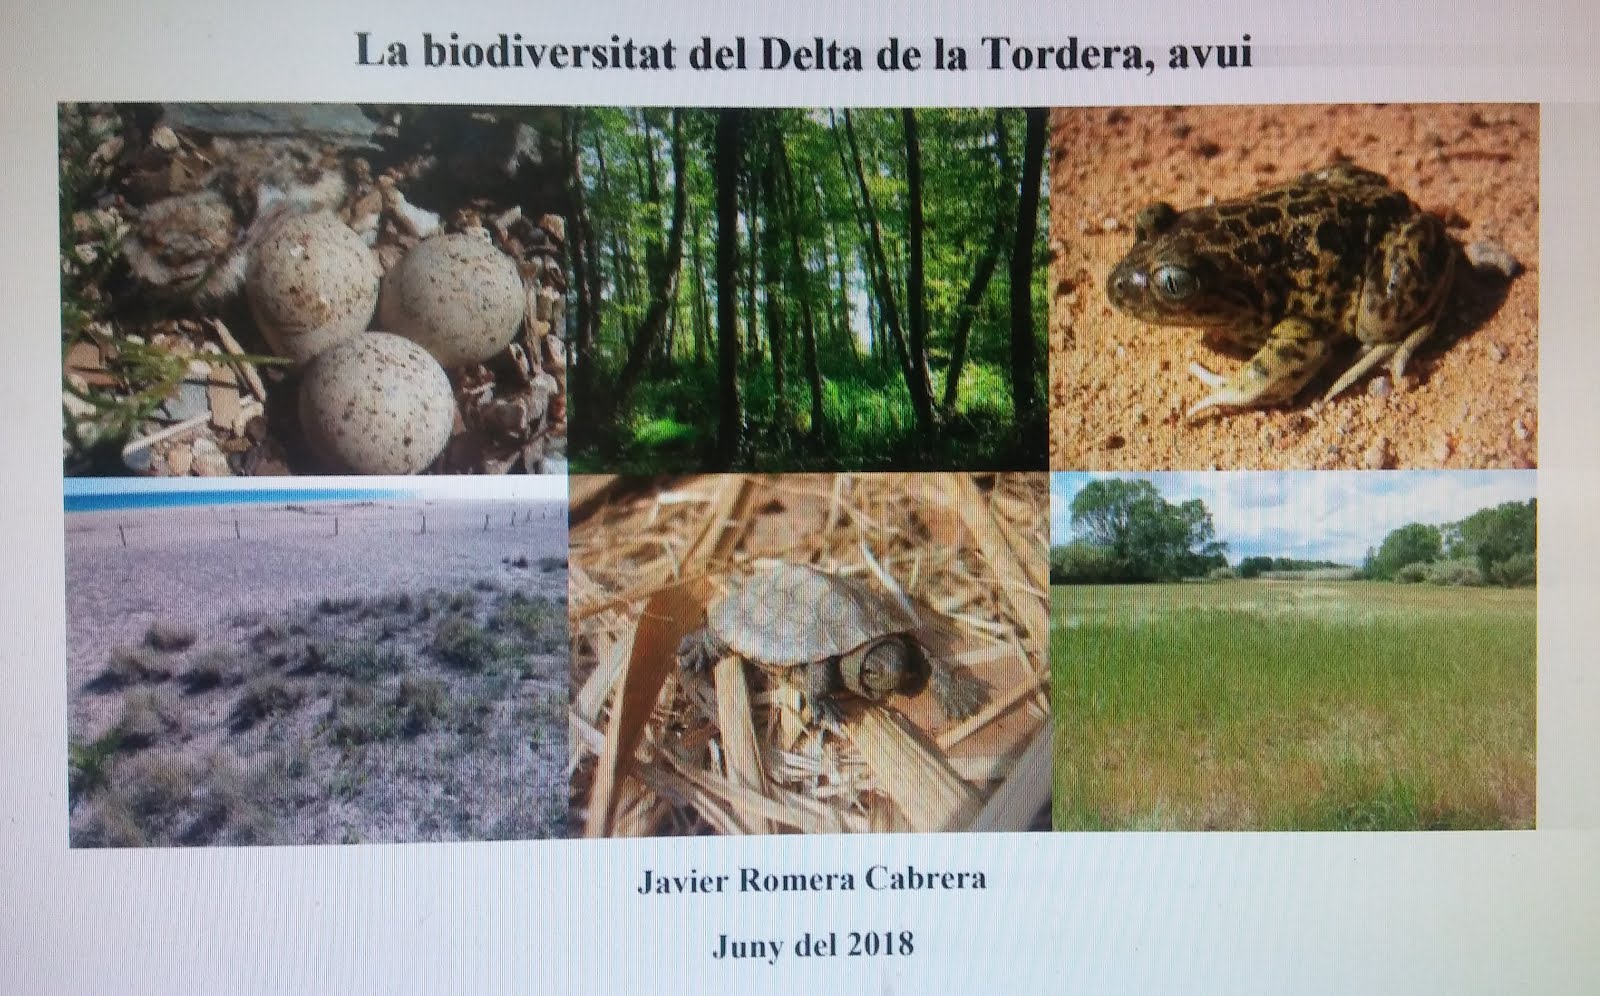 La biodiversitat del Delta de la Tordera, avui